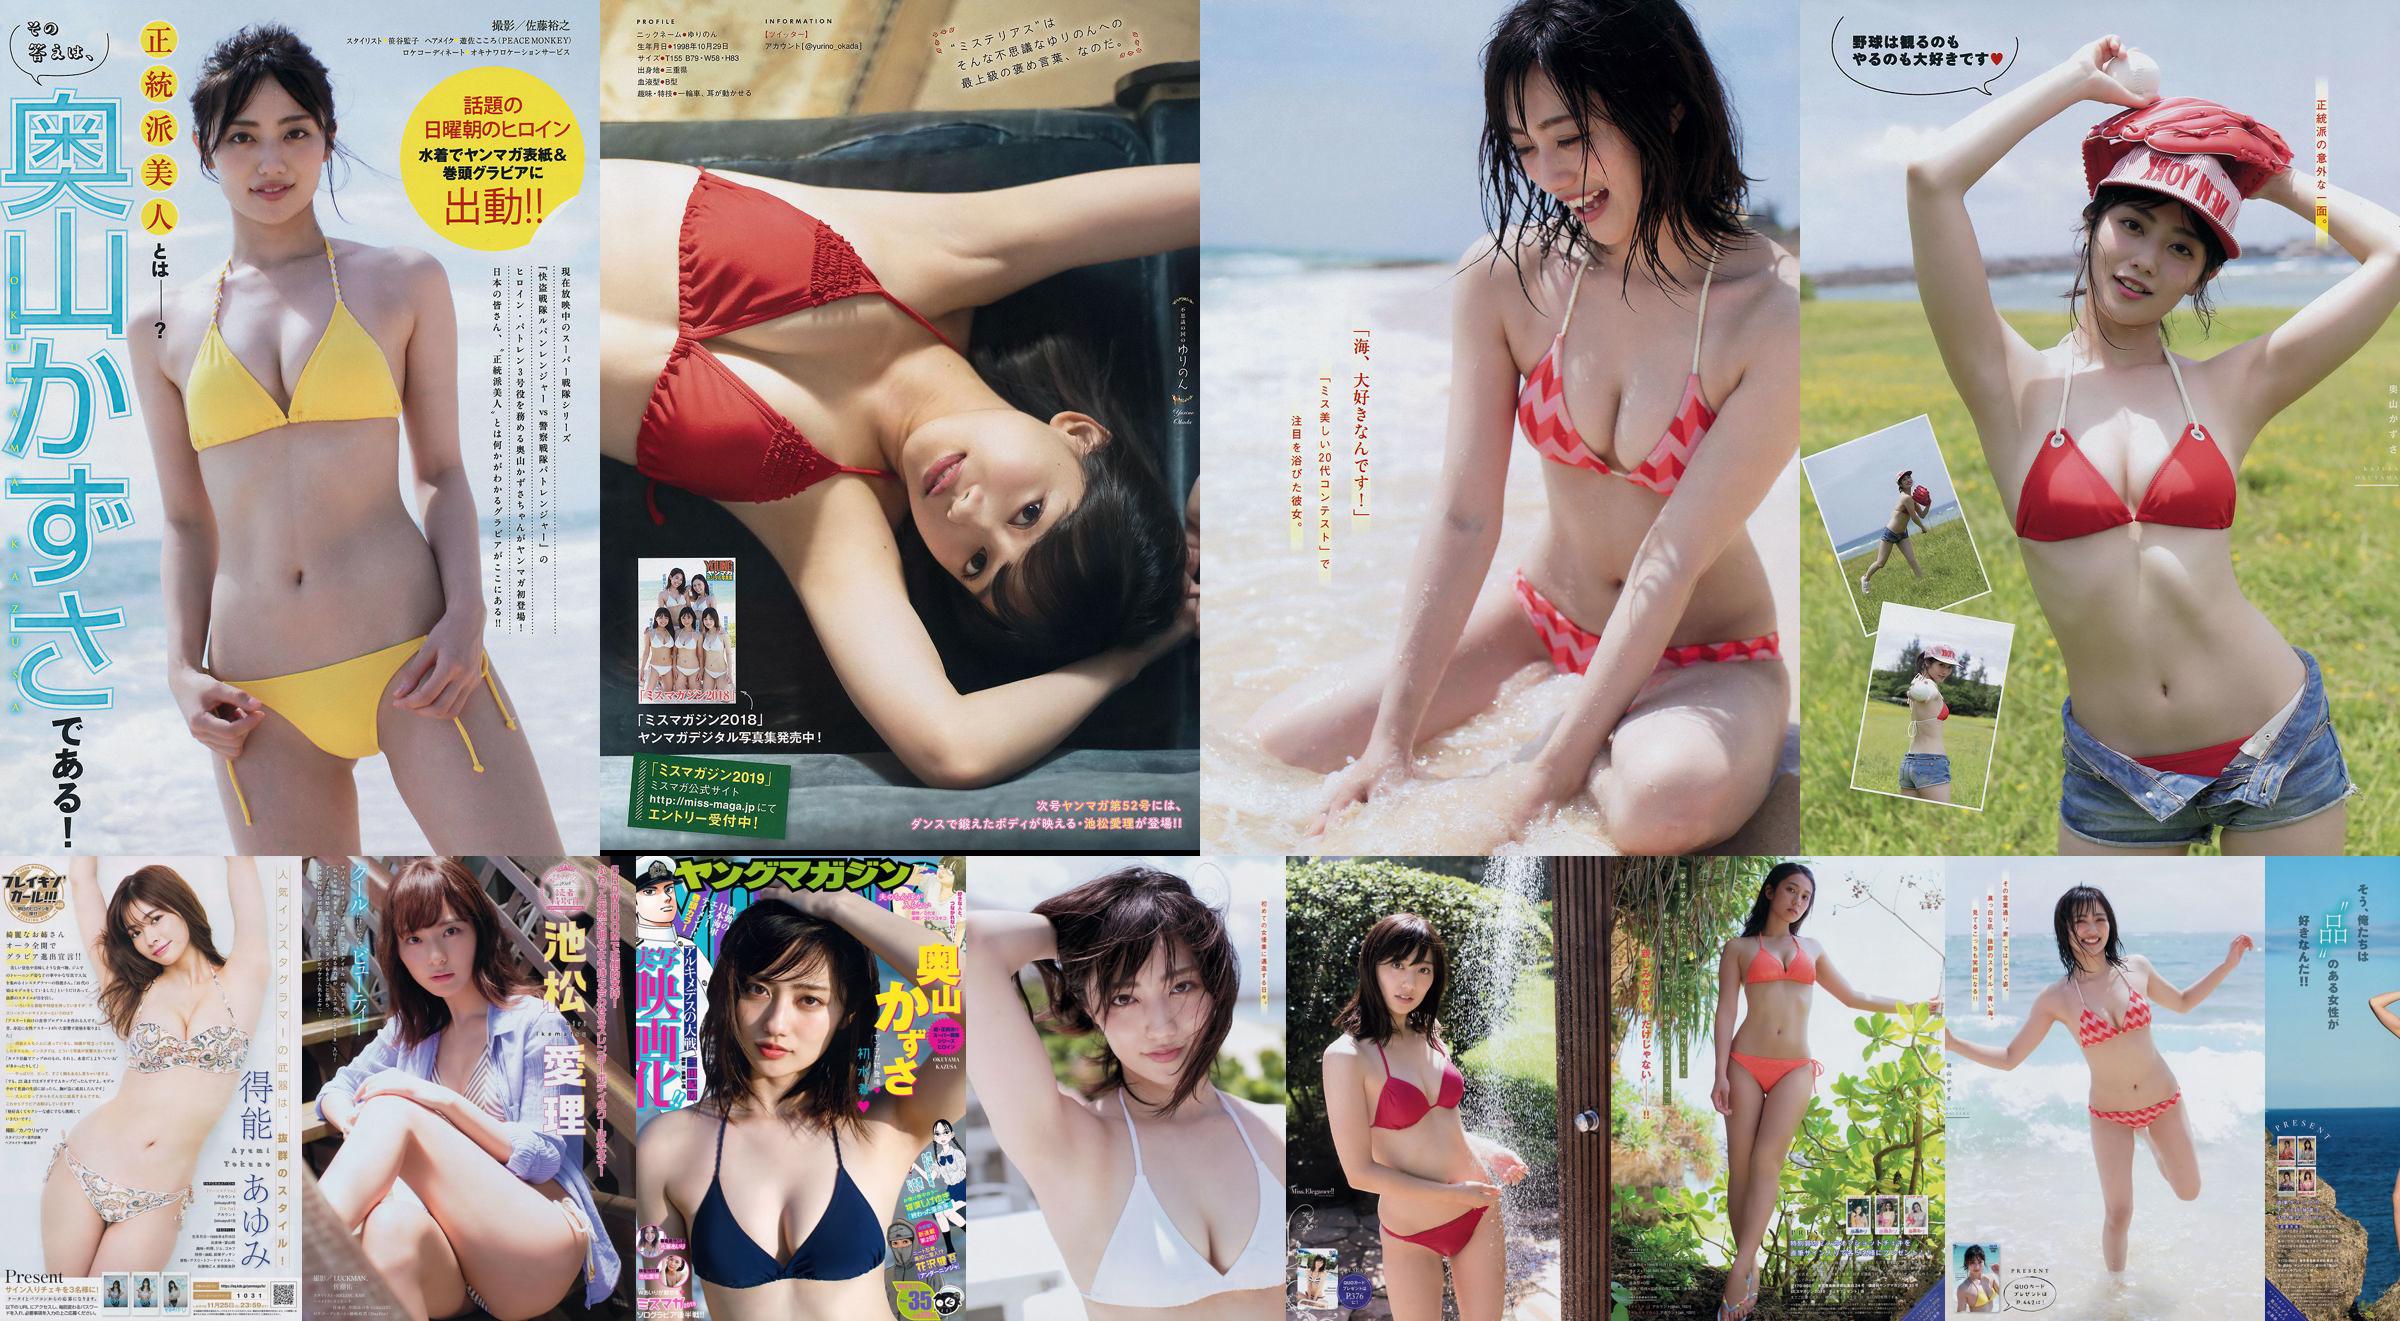 [Revista Young] Kazusa Okuyama Airi Sato Airi Ikematsu 2018 No.35 Photo Mori No.fb3847 Página 3